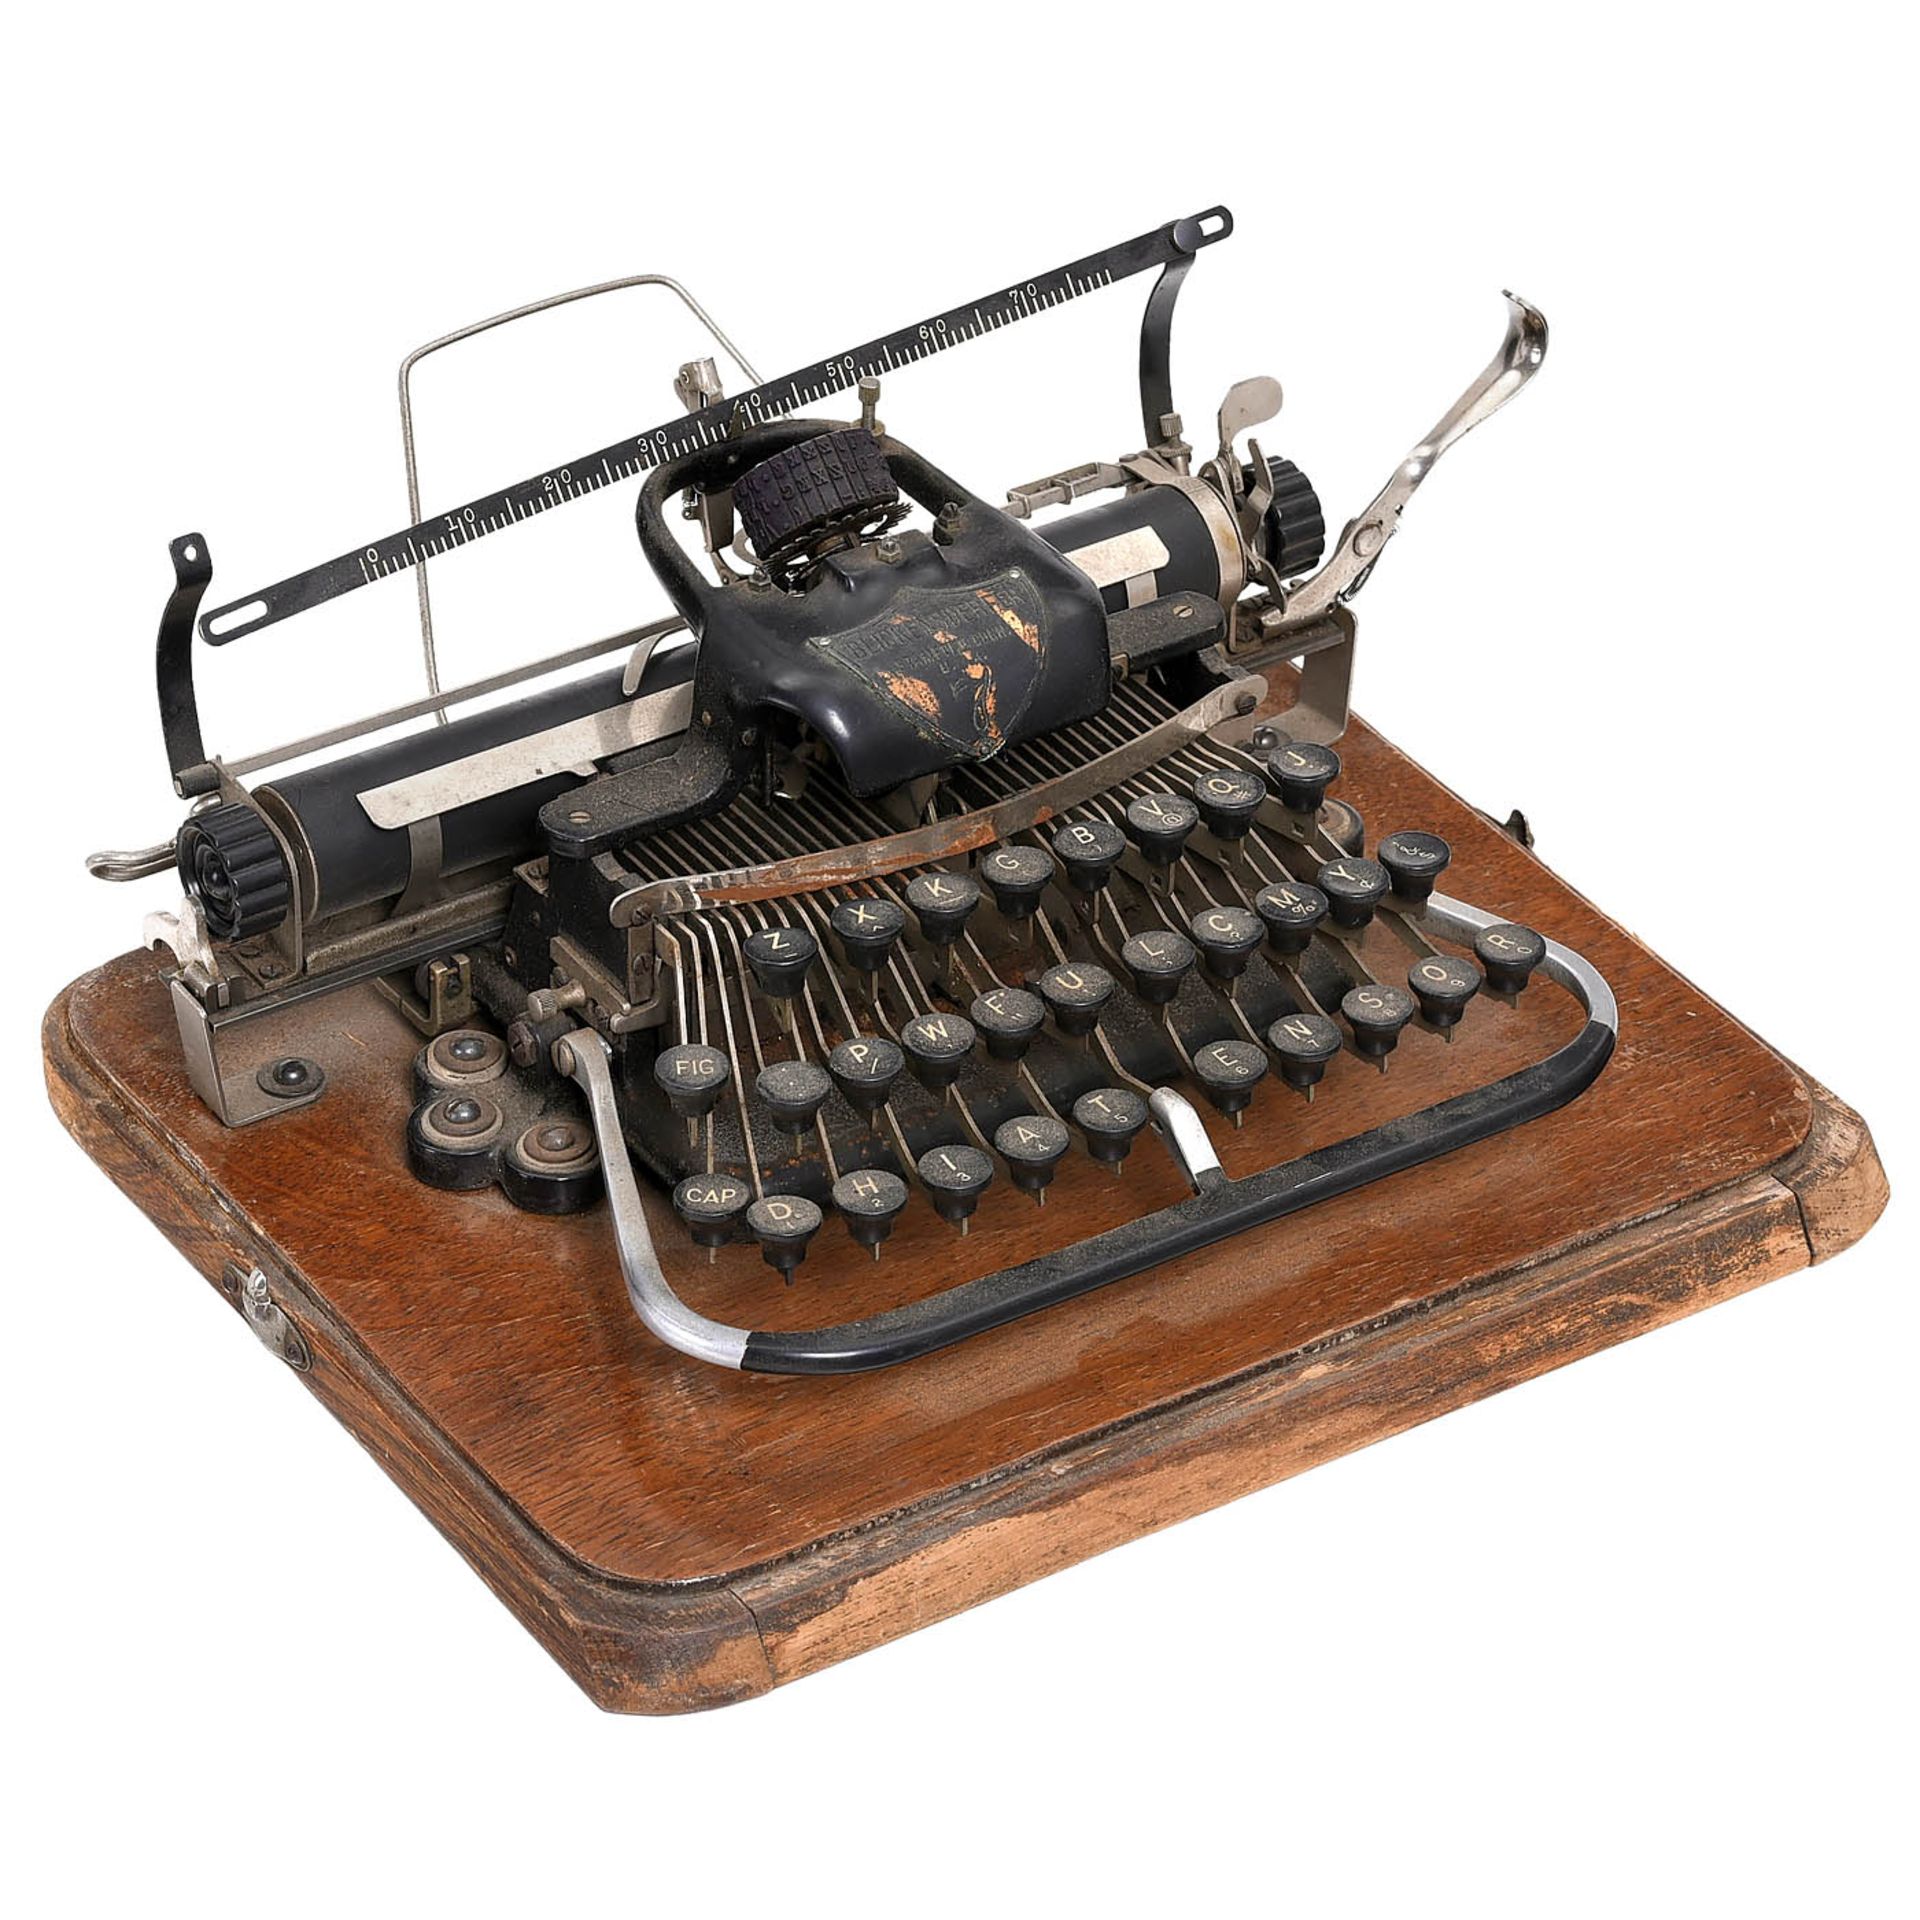 3 Blickensderfer Typewriters - Bild 2 aus 4